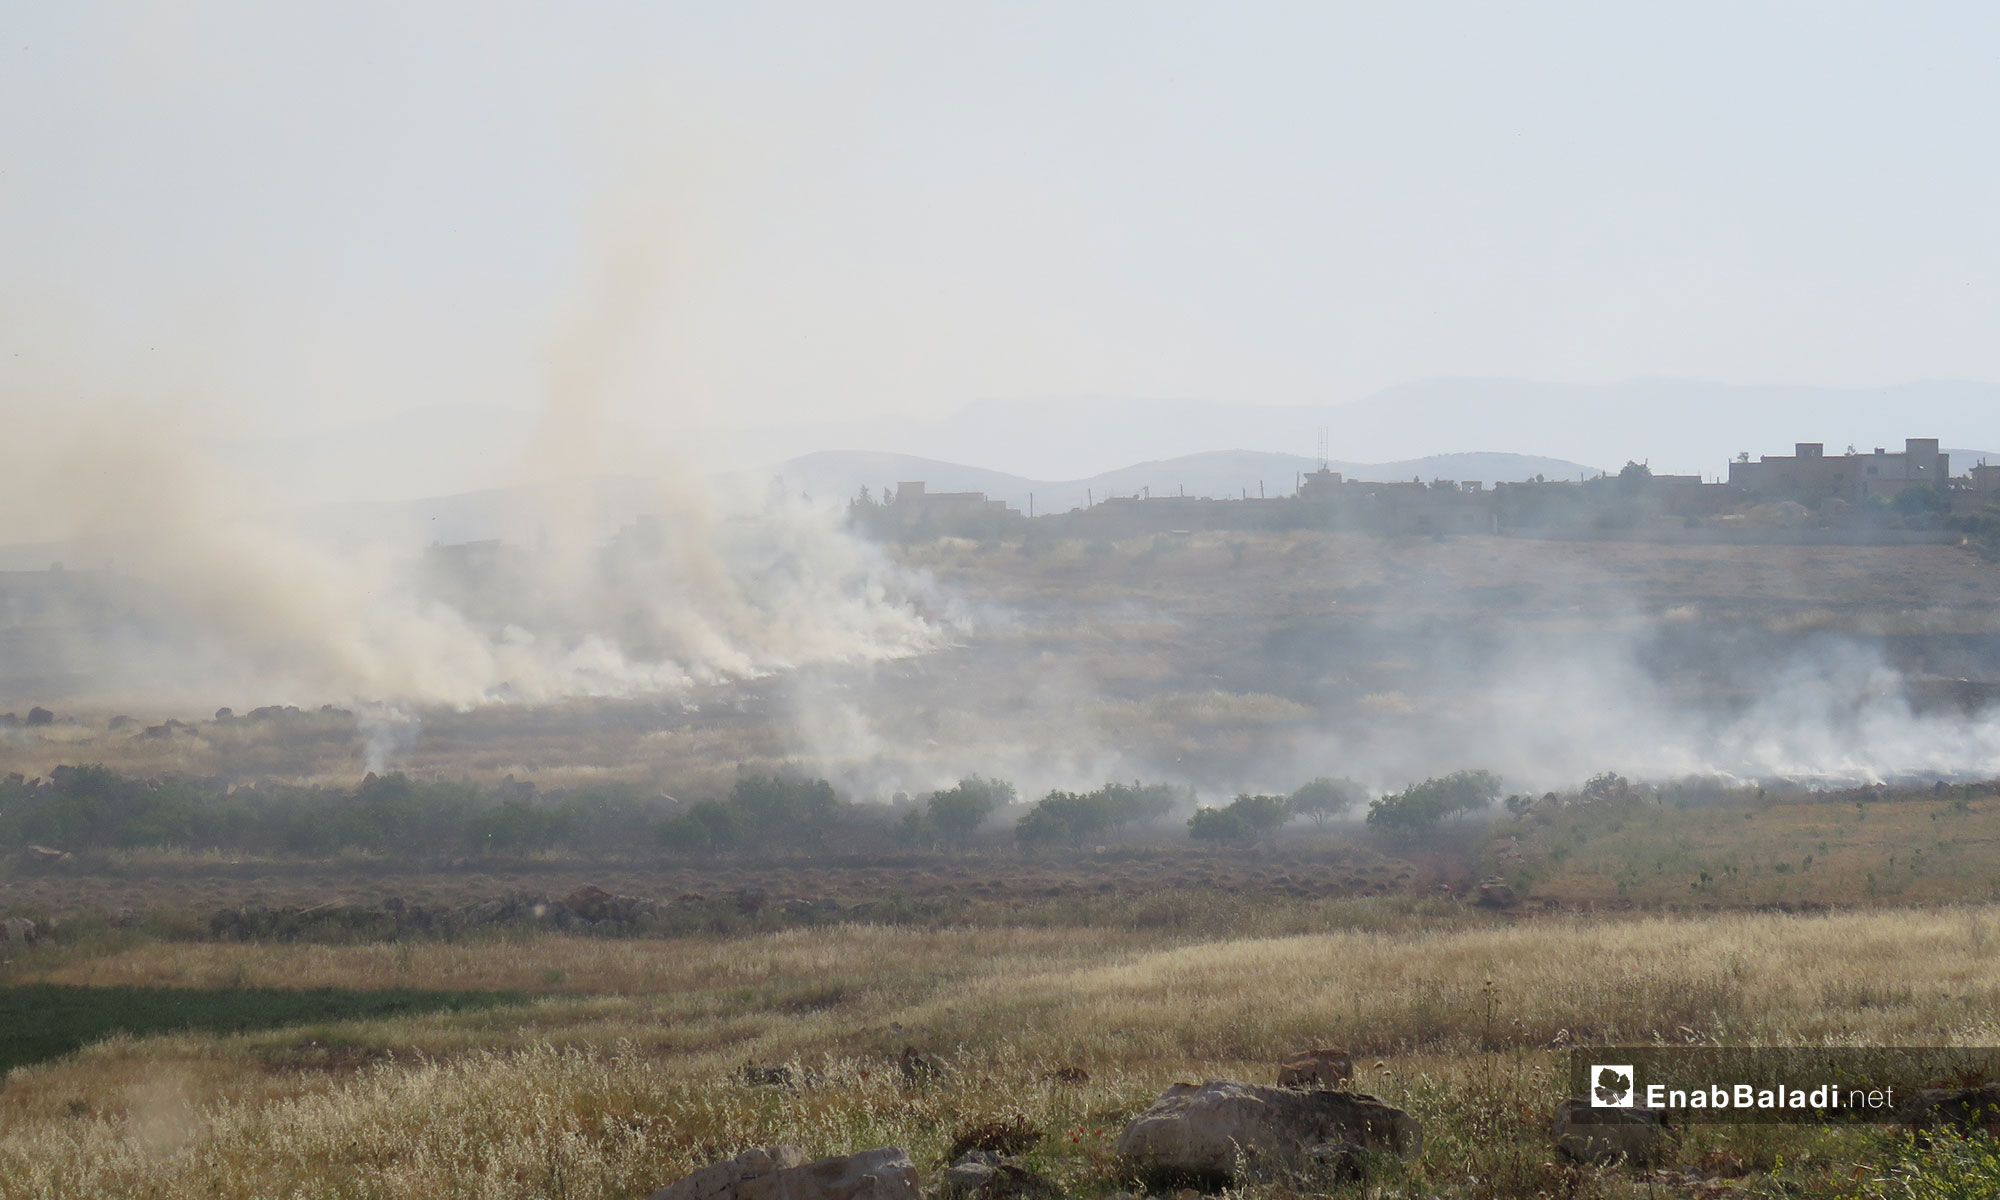 احتراق المحاصيل الزراعية في بلدة  ترملا جنوب ادلب بعد استهدافها براجمات الصواريخ - 14 من أيار 2019 (عنب بلدي)